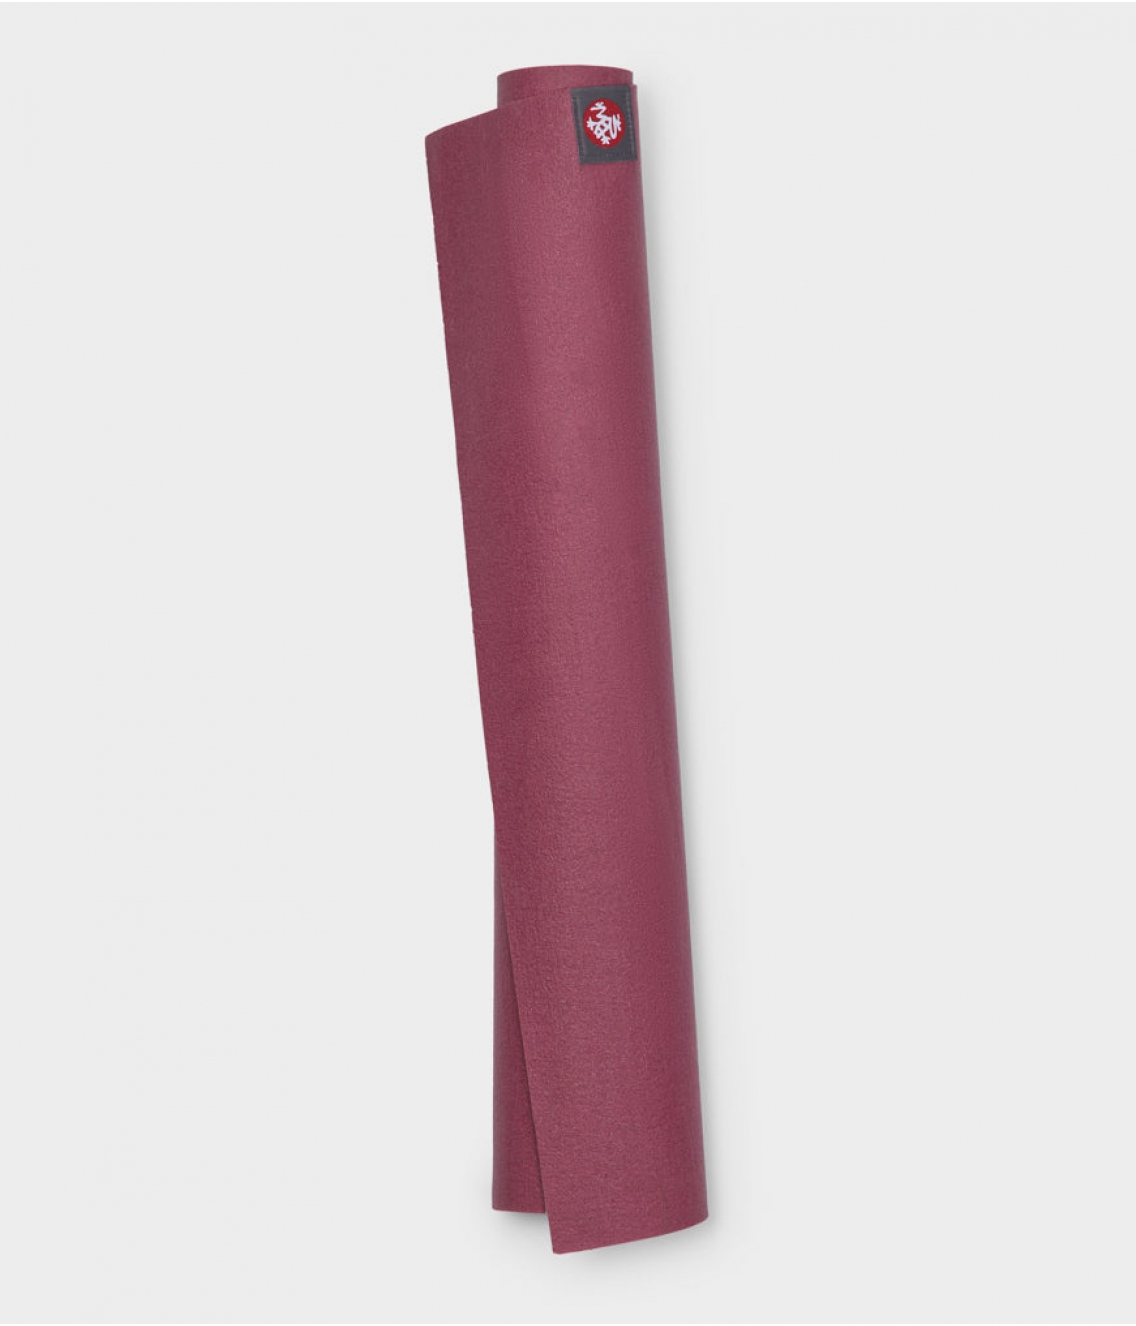 Профессиональный складной каучуковый коврик для йоги Manduka EKO Superlite Travel Mat 180*61*0,15 см - Elderberry Stripe